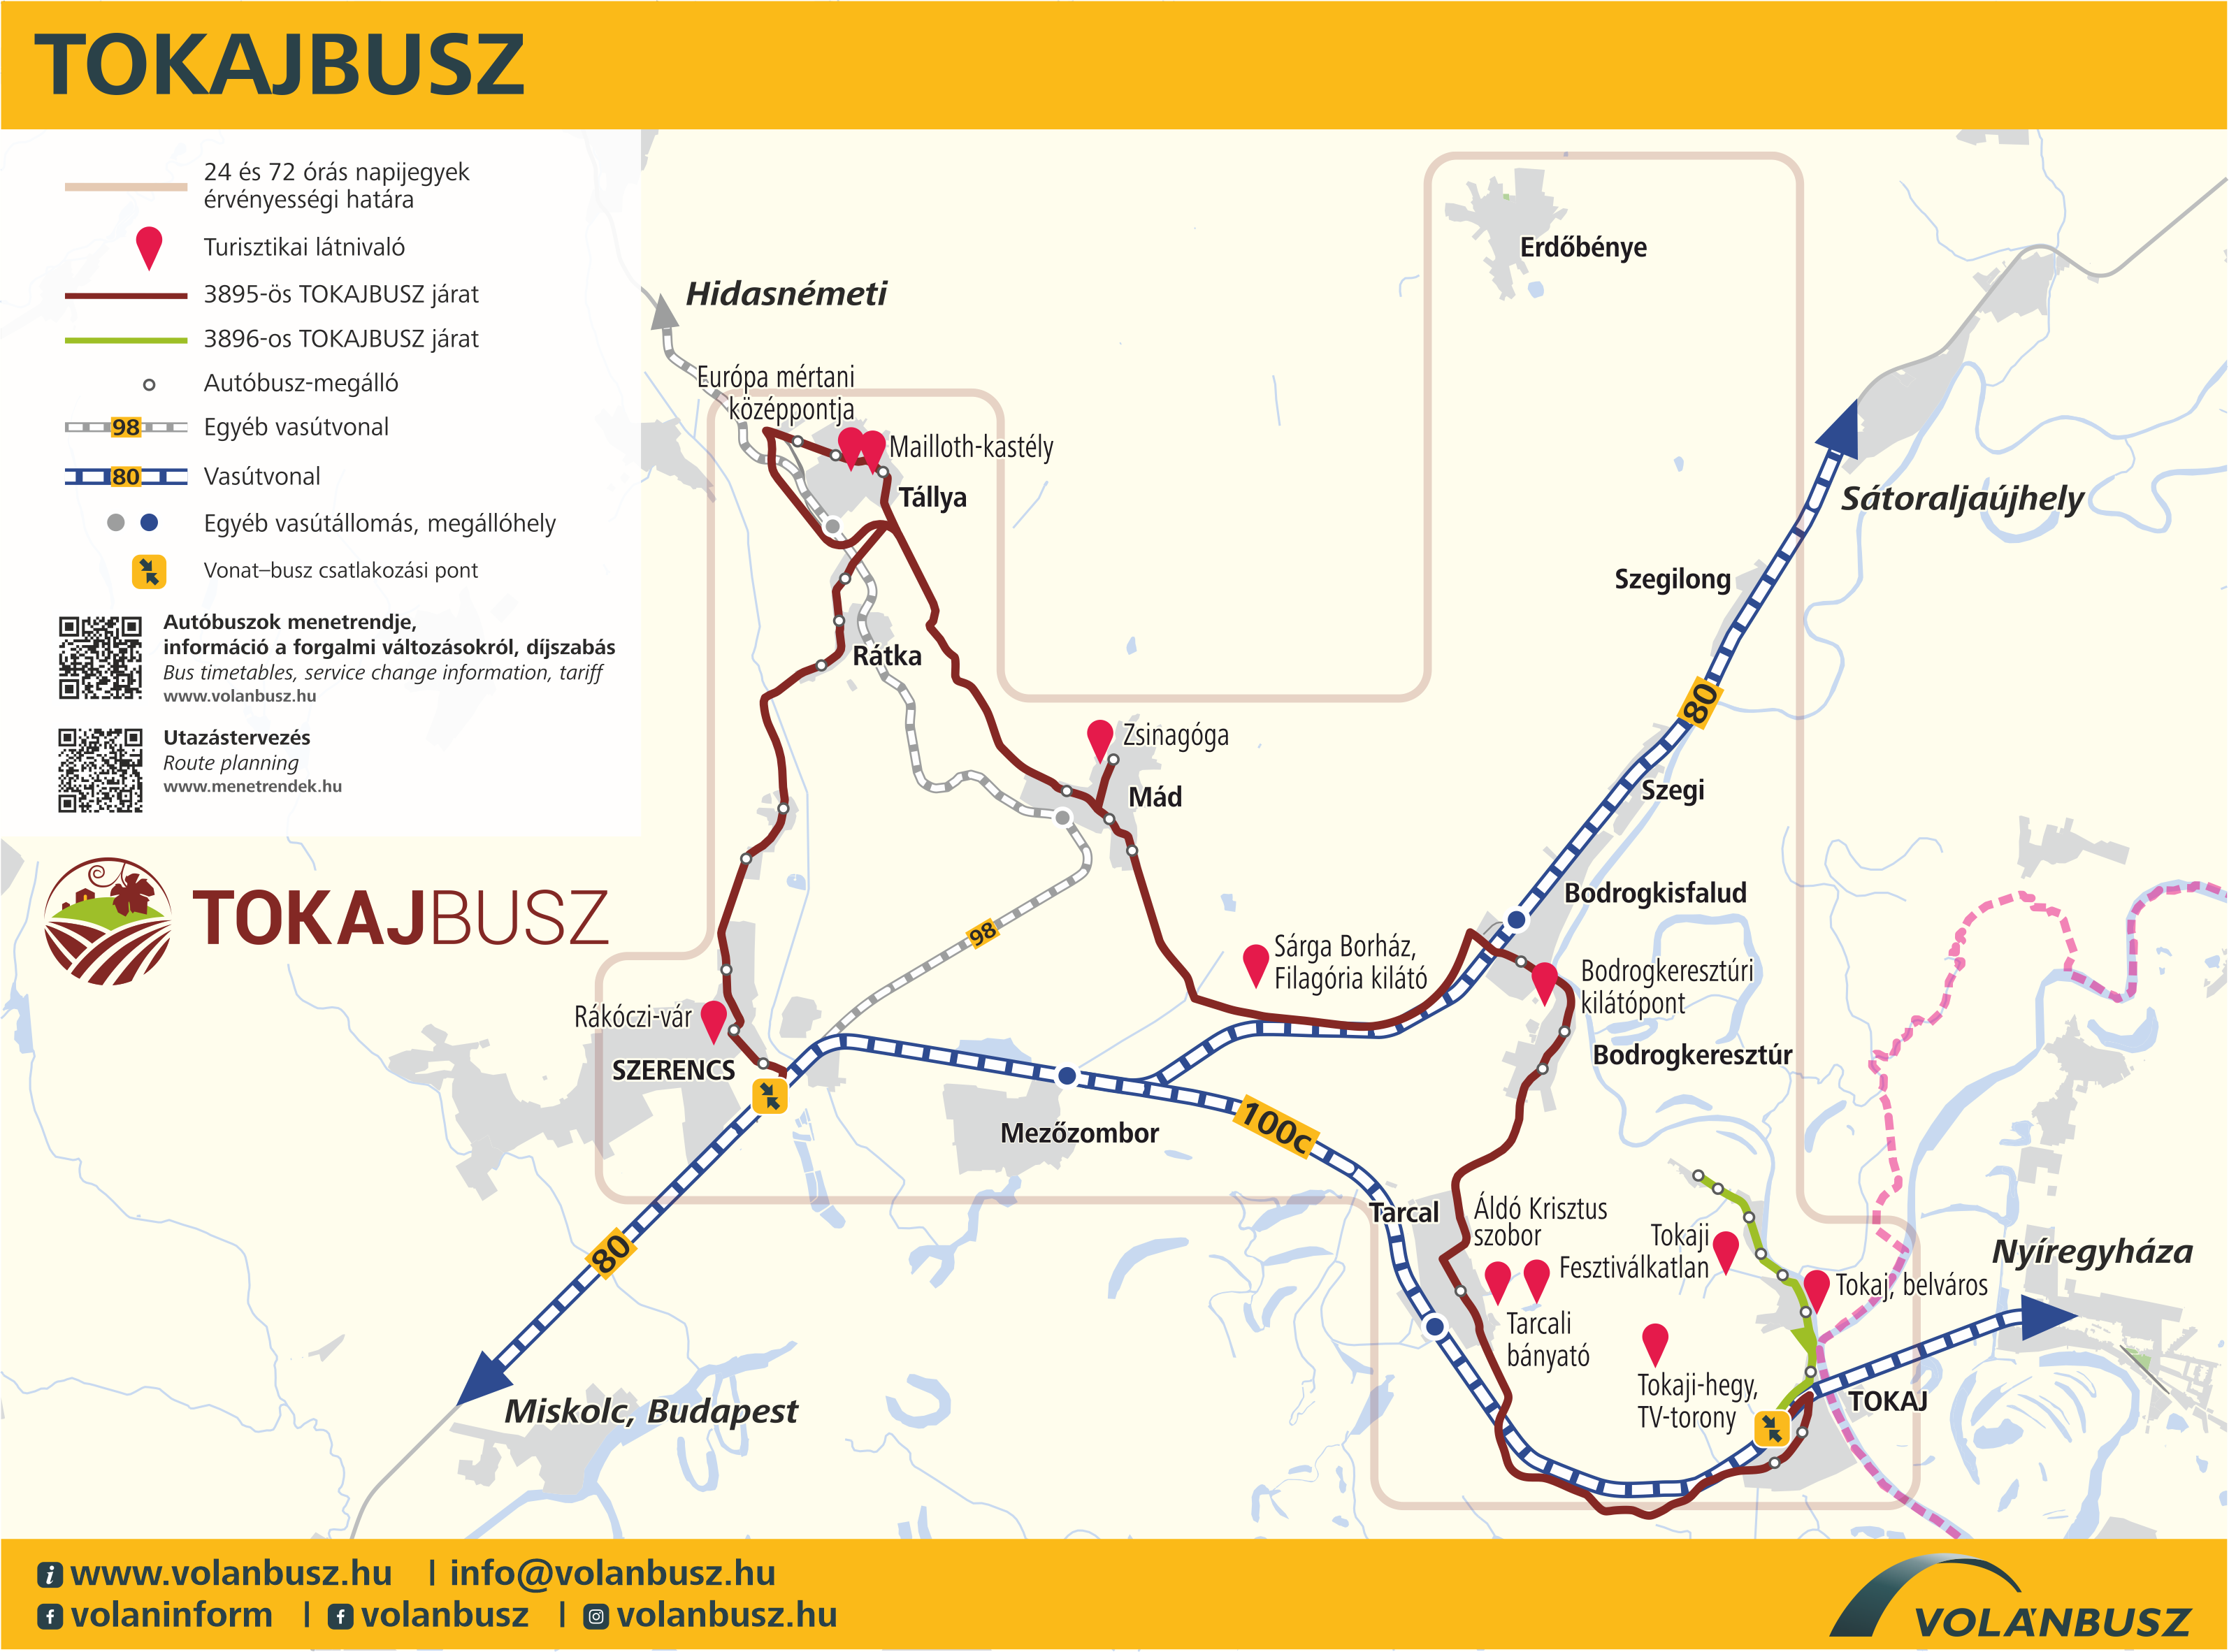 A Tokajbusz ideiglenes útvonala térképen.